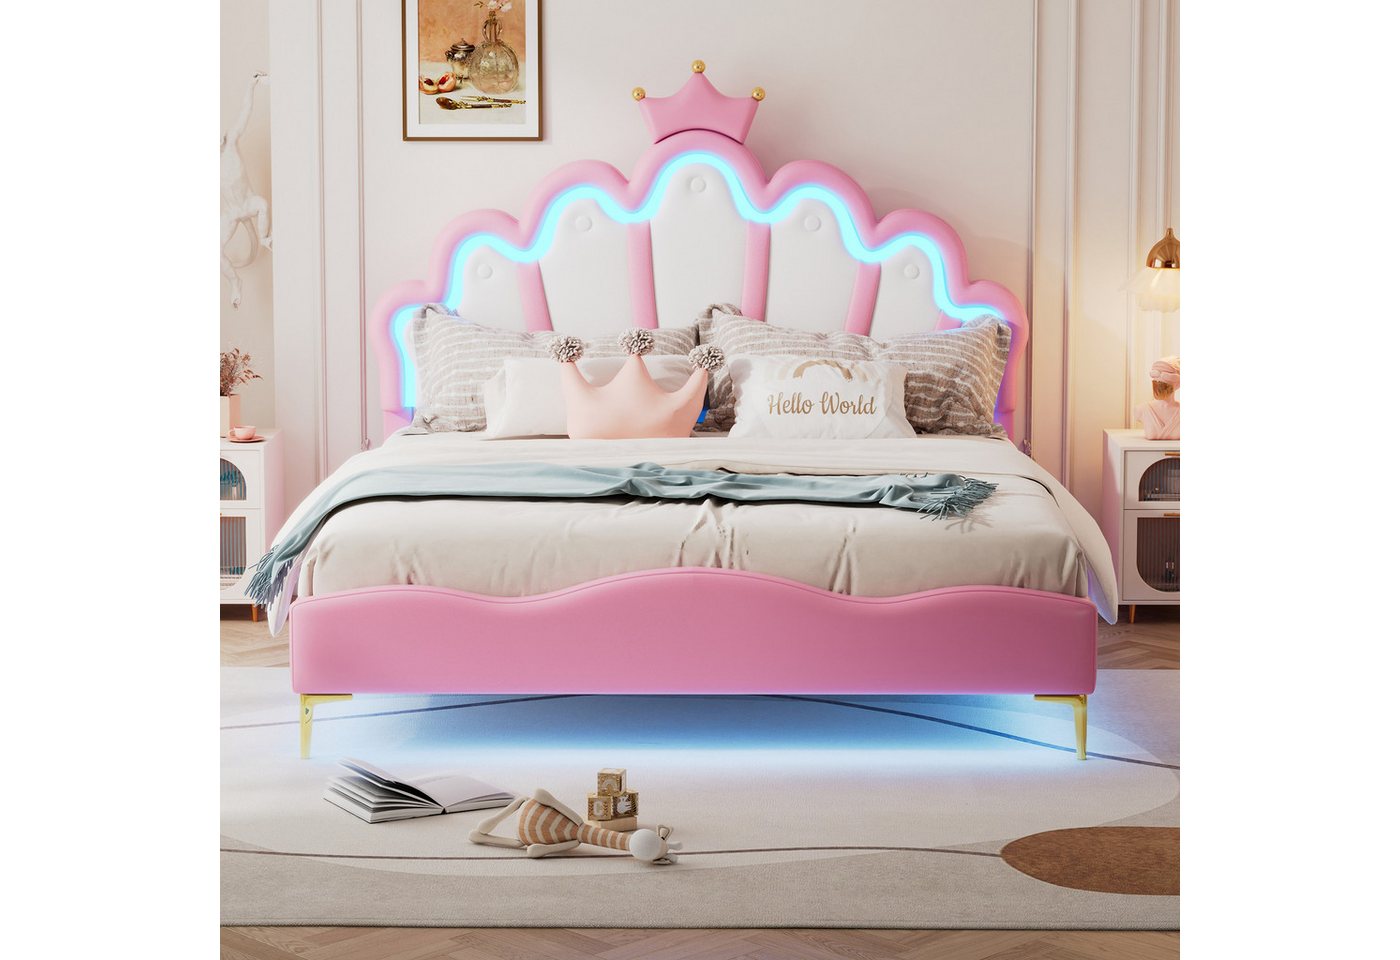 XDOVET Kinderbett 140*200cm Doppelbett, kronenförmiges Prinzessinnenbett, Polsterung aus PU-Leder, verstellbarer LED-Umlichtstreifen, Rosa von XDOVET